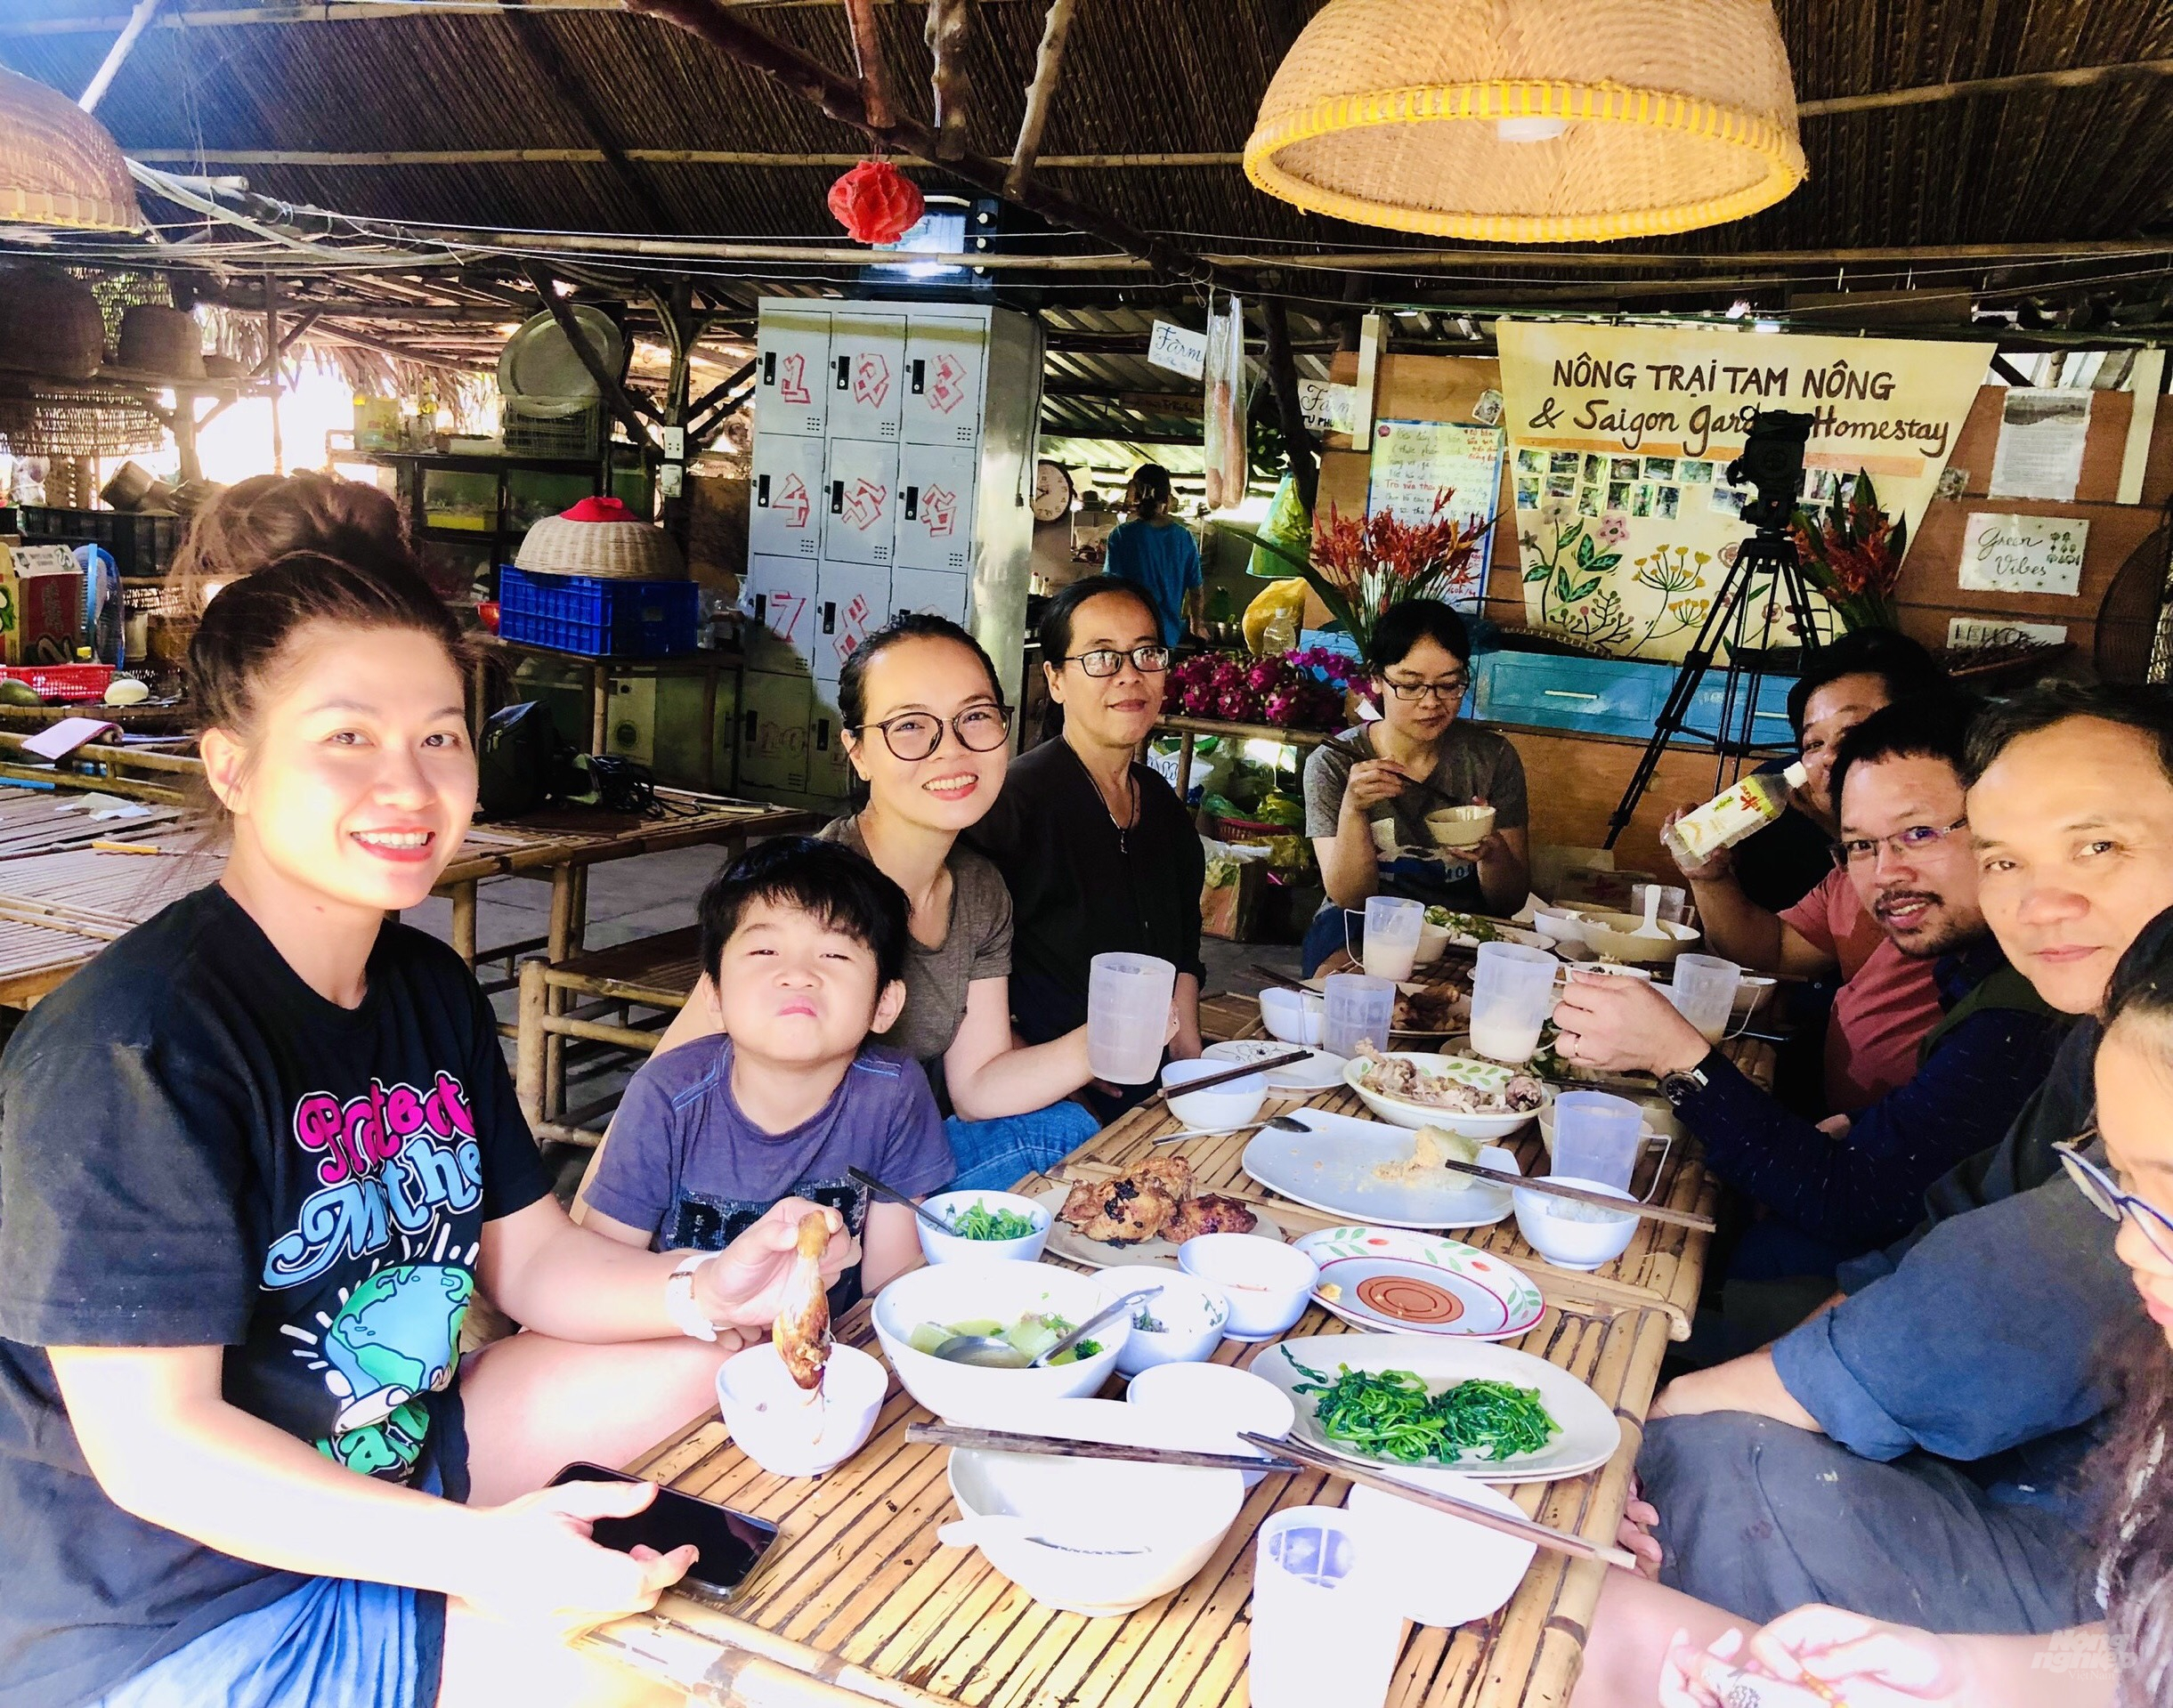 Bữa cơm giữa du khách với chủ Nông trại tràn ngập không khí gia đình ấm cúng và những tiết mục biểu diễn văn nghệ của khách ngoại quốc tại Tam Nông Farm. Ảnh: Minh Sáng.